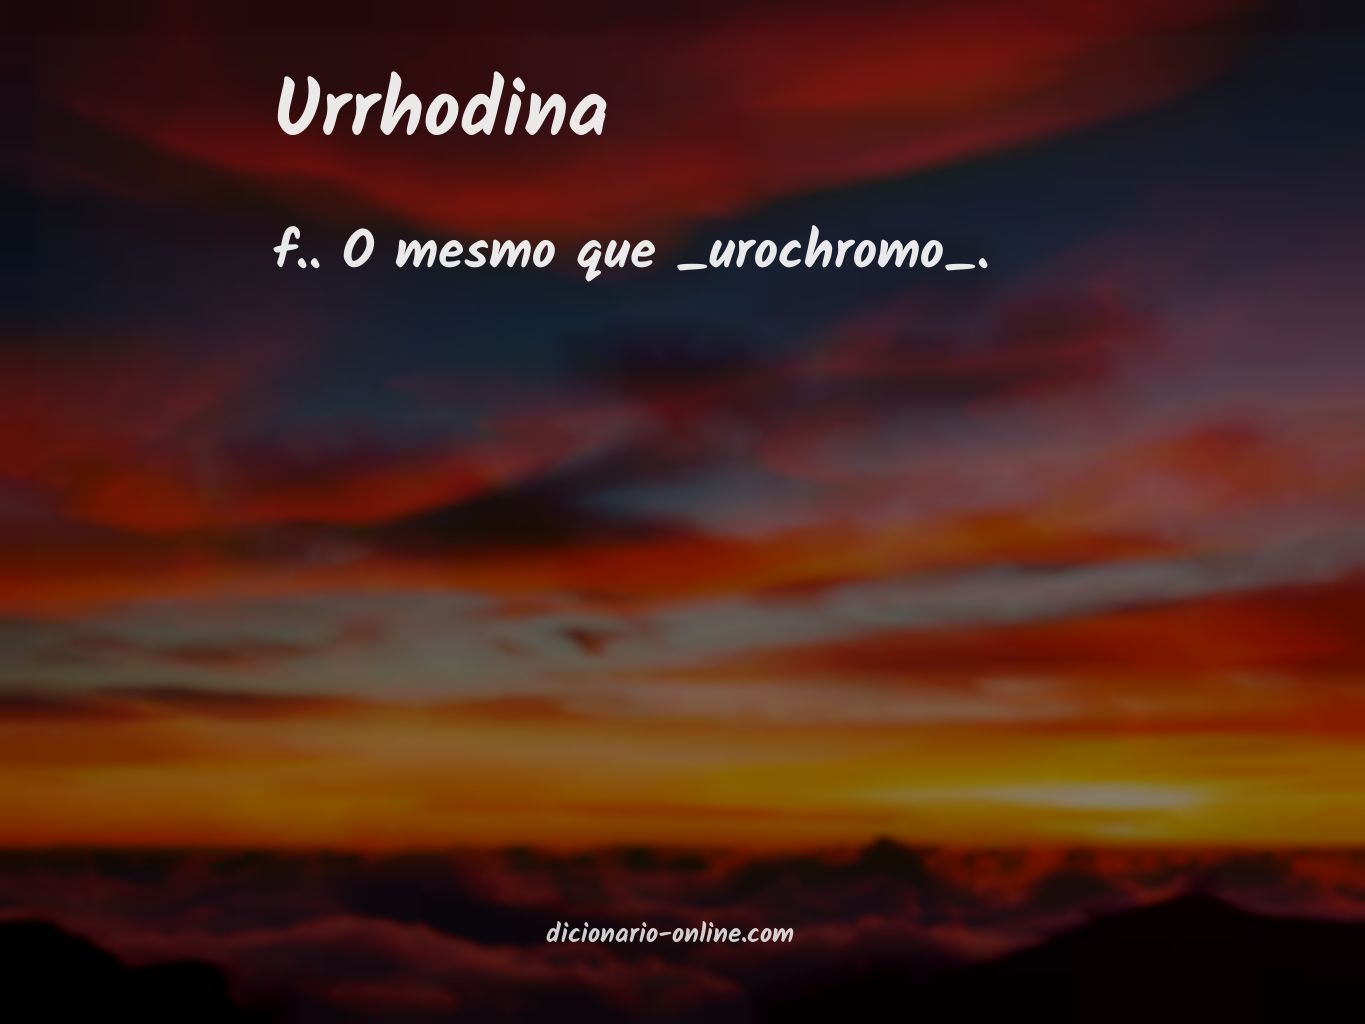 Significado de urrhodina